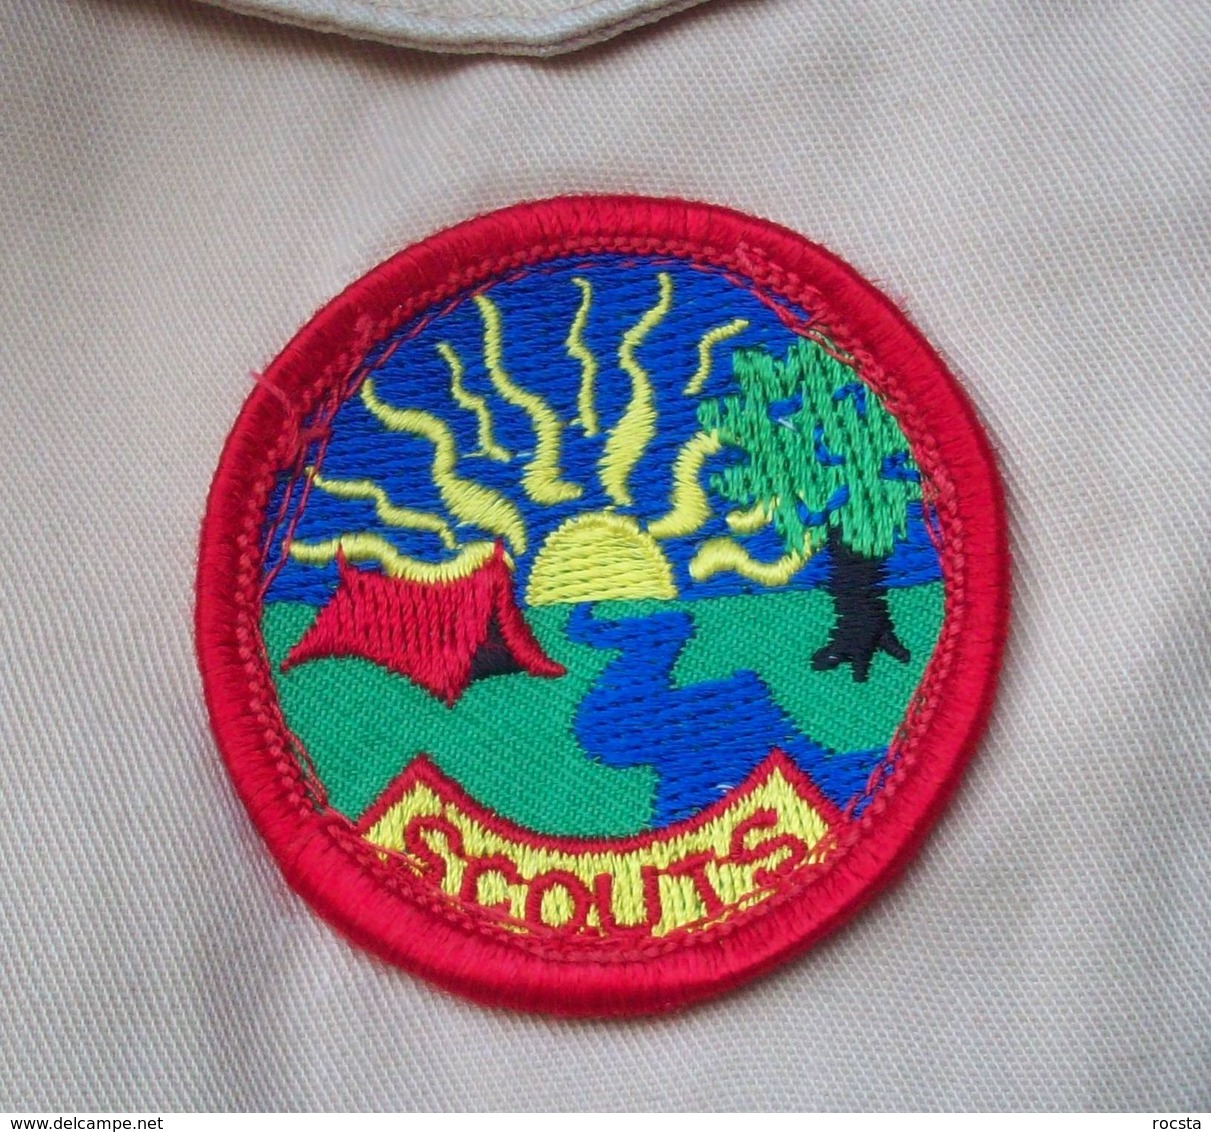 Vintage Dutch Scouts Shirt - 8 Patches - Scoutisme